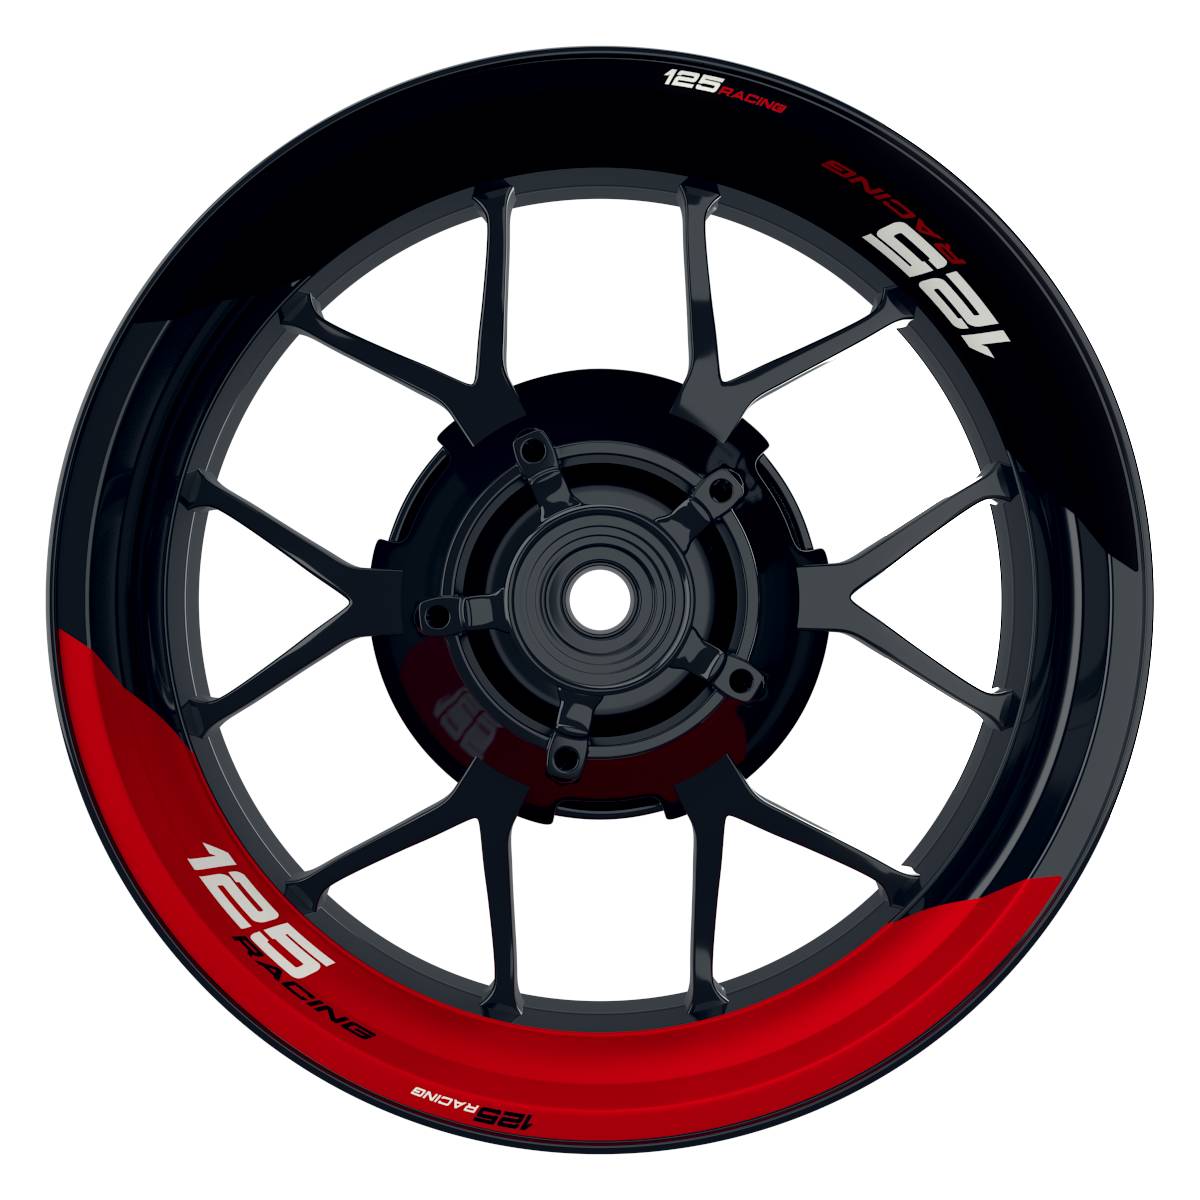 KTM Racing 125 halb halb schwarz rot Frontansicht